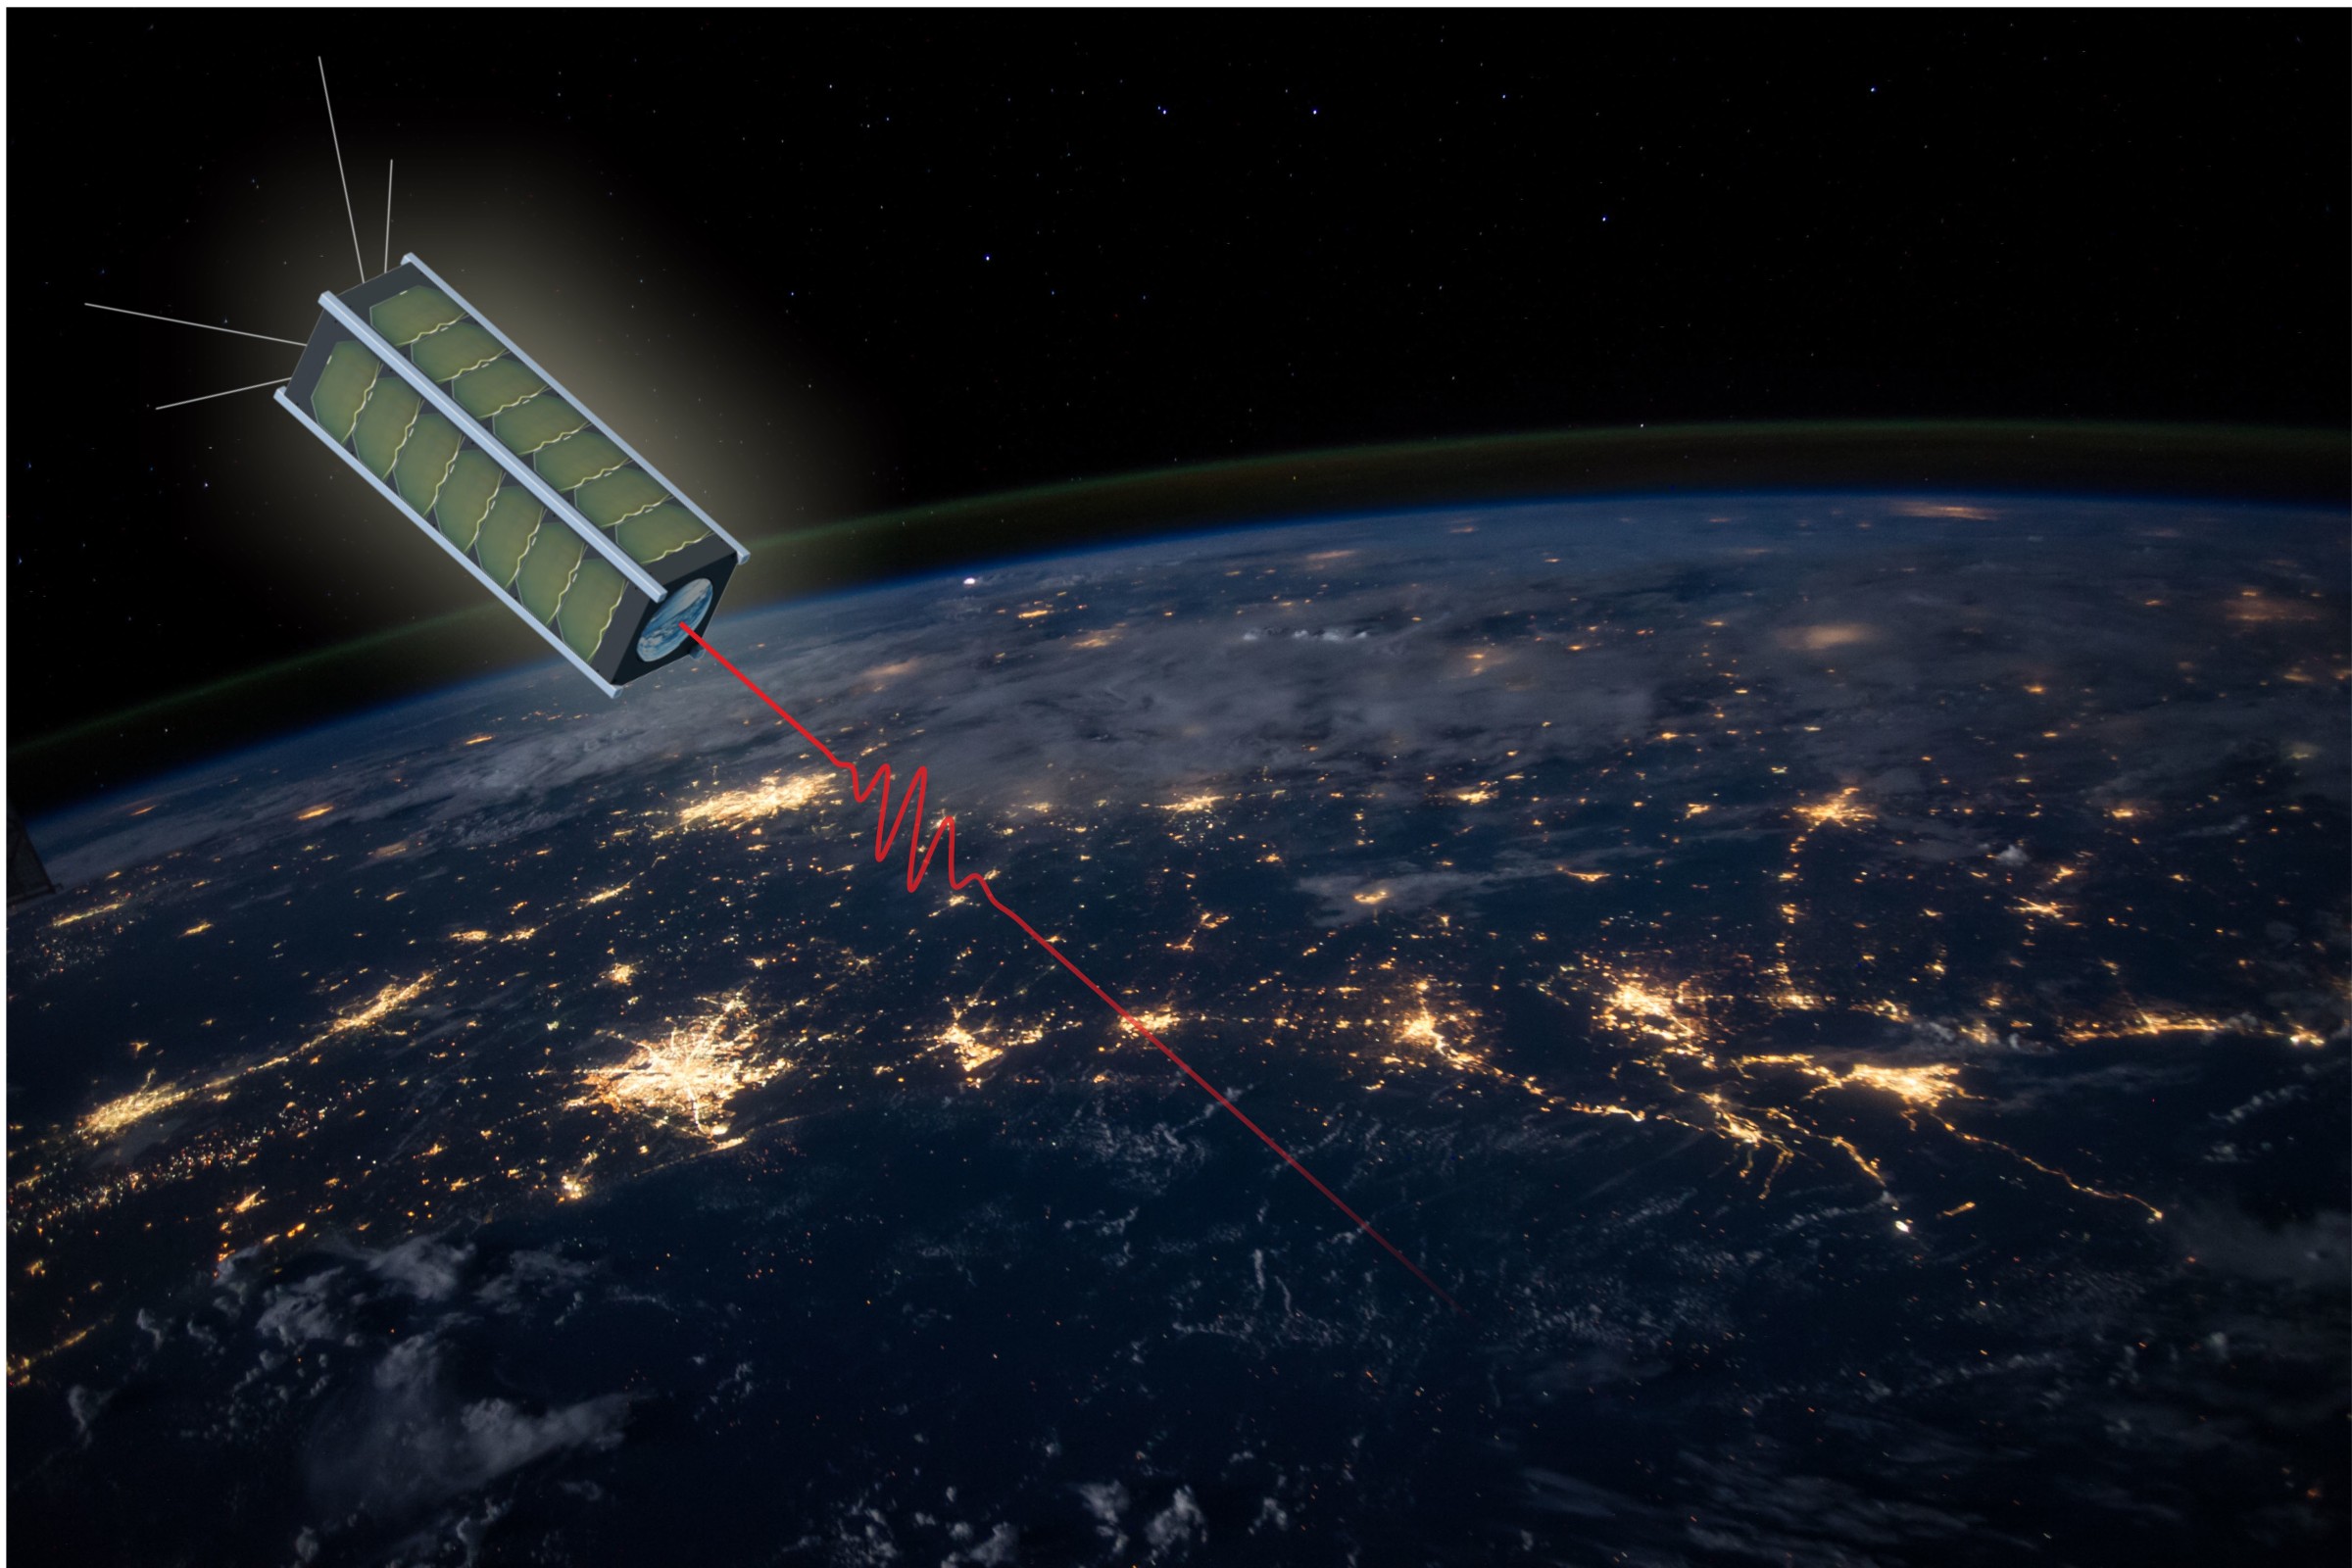 世界規模の量子鍵暗号化 超小型衛星QUBEが宇宙に打ち上げられる(Global quantum key encryption: Nano-Satellite QUBE launches into Space)